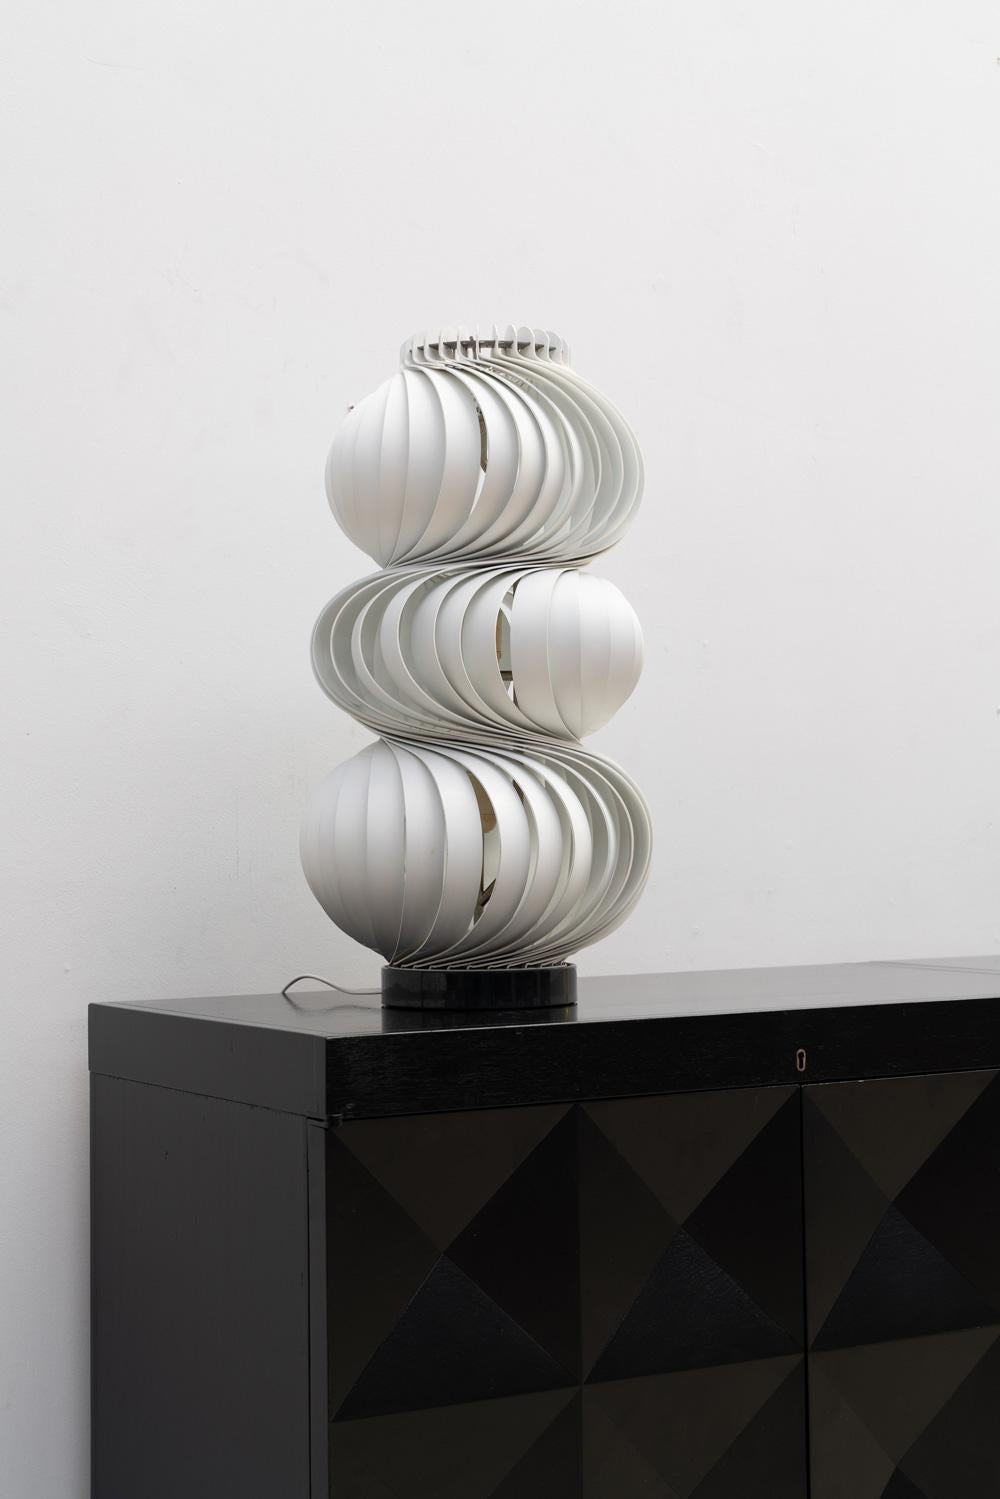 Lampe de table Olaf von Bohr conçue en 1968.
Modèle 